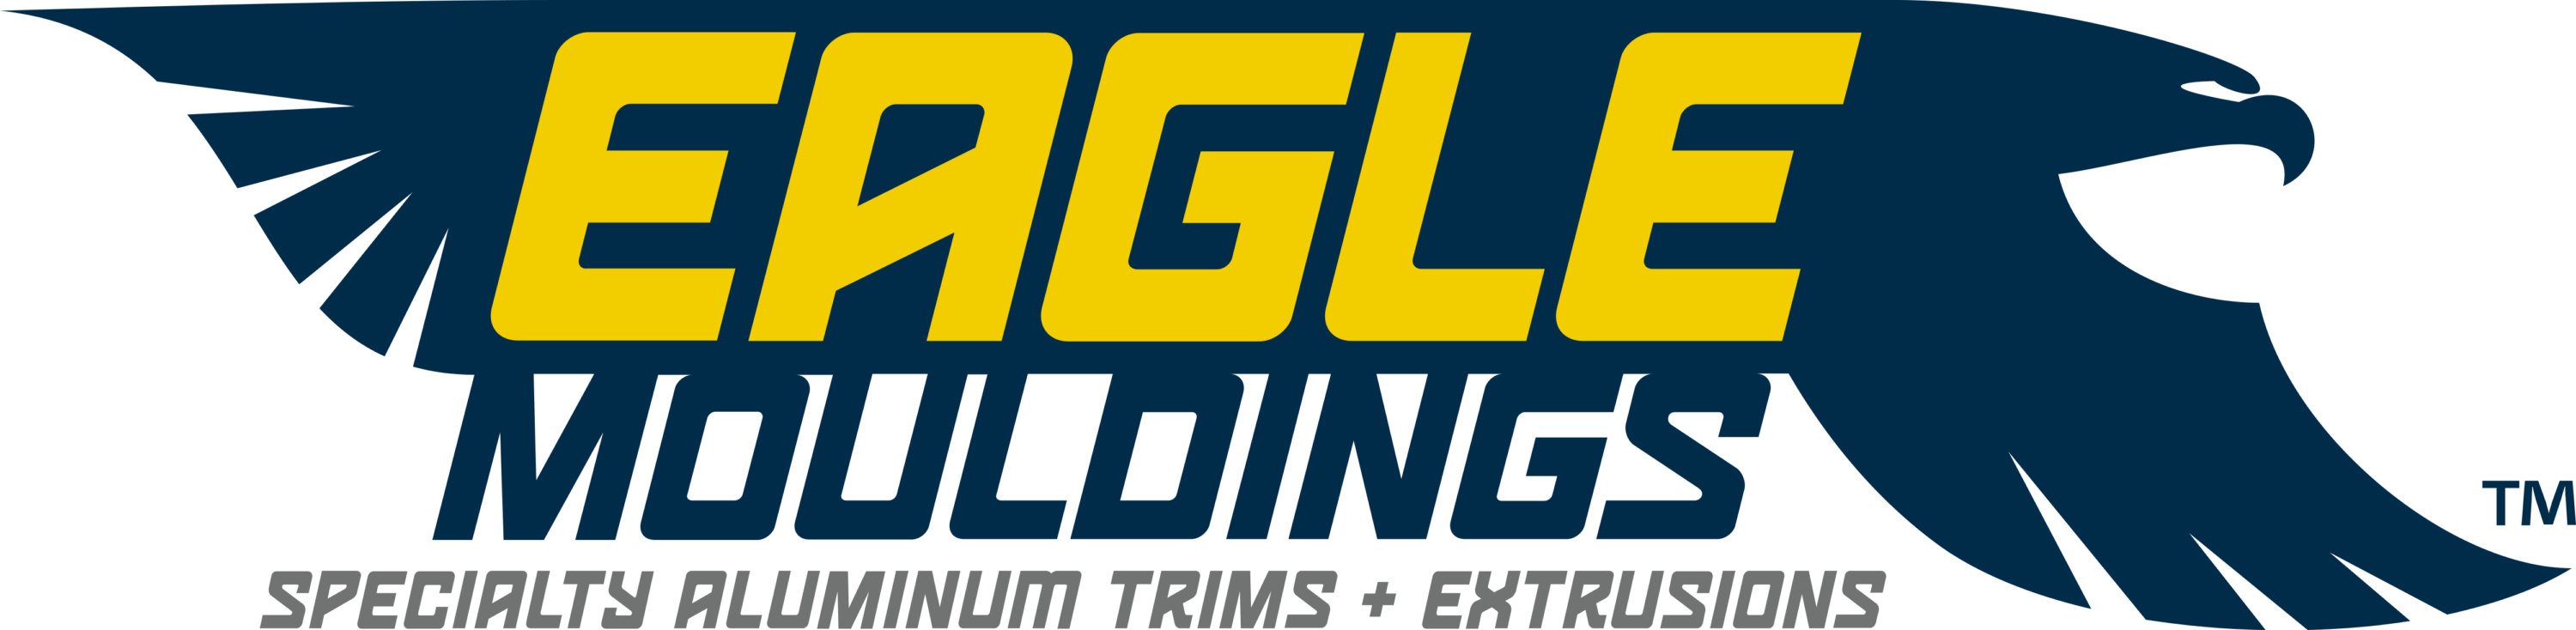 Eagle Mouldings Inc Logo